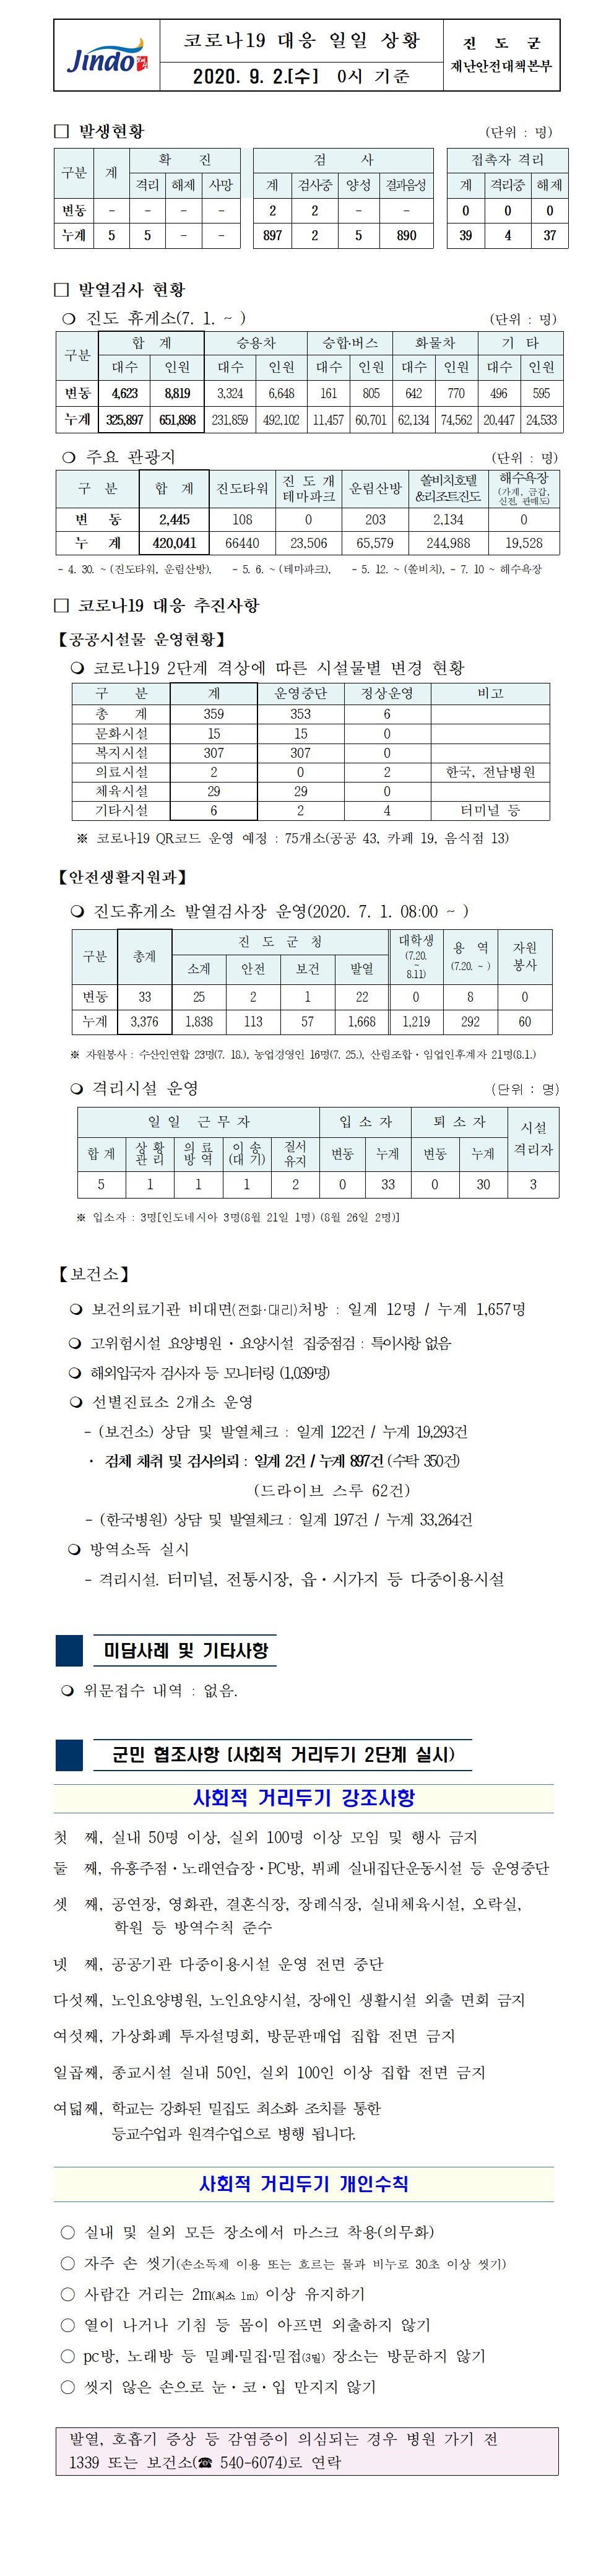 코로나19대응 일일 상황 보고(9월2일 0시 기준) 첨부#1